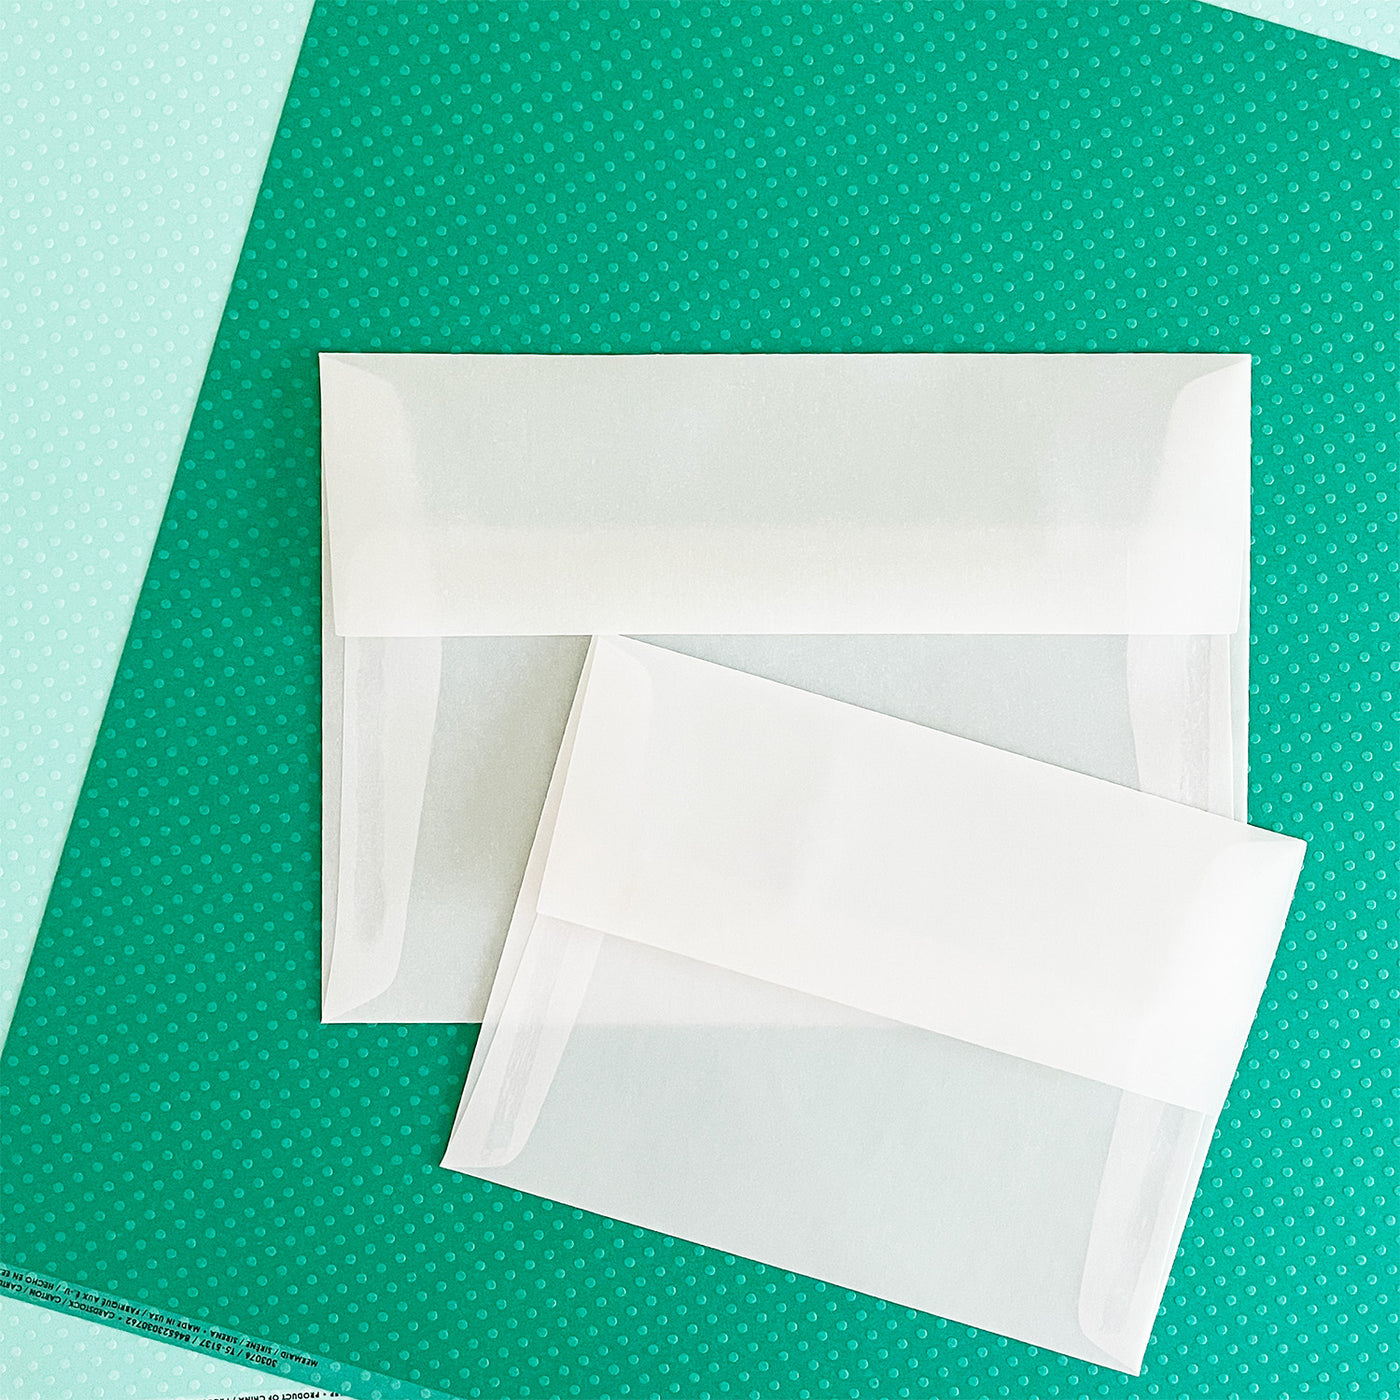 Printable Translucent Vellum Paper - 8.5x11 Inches - Italy